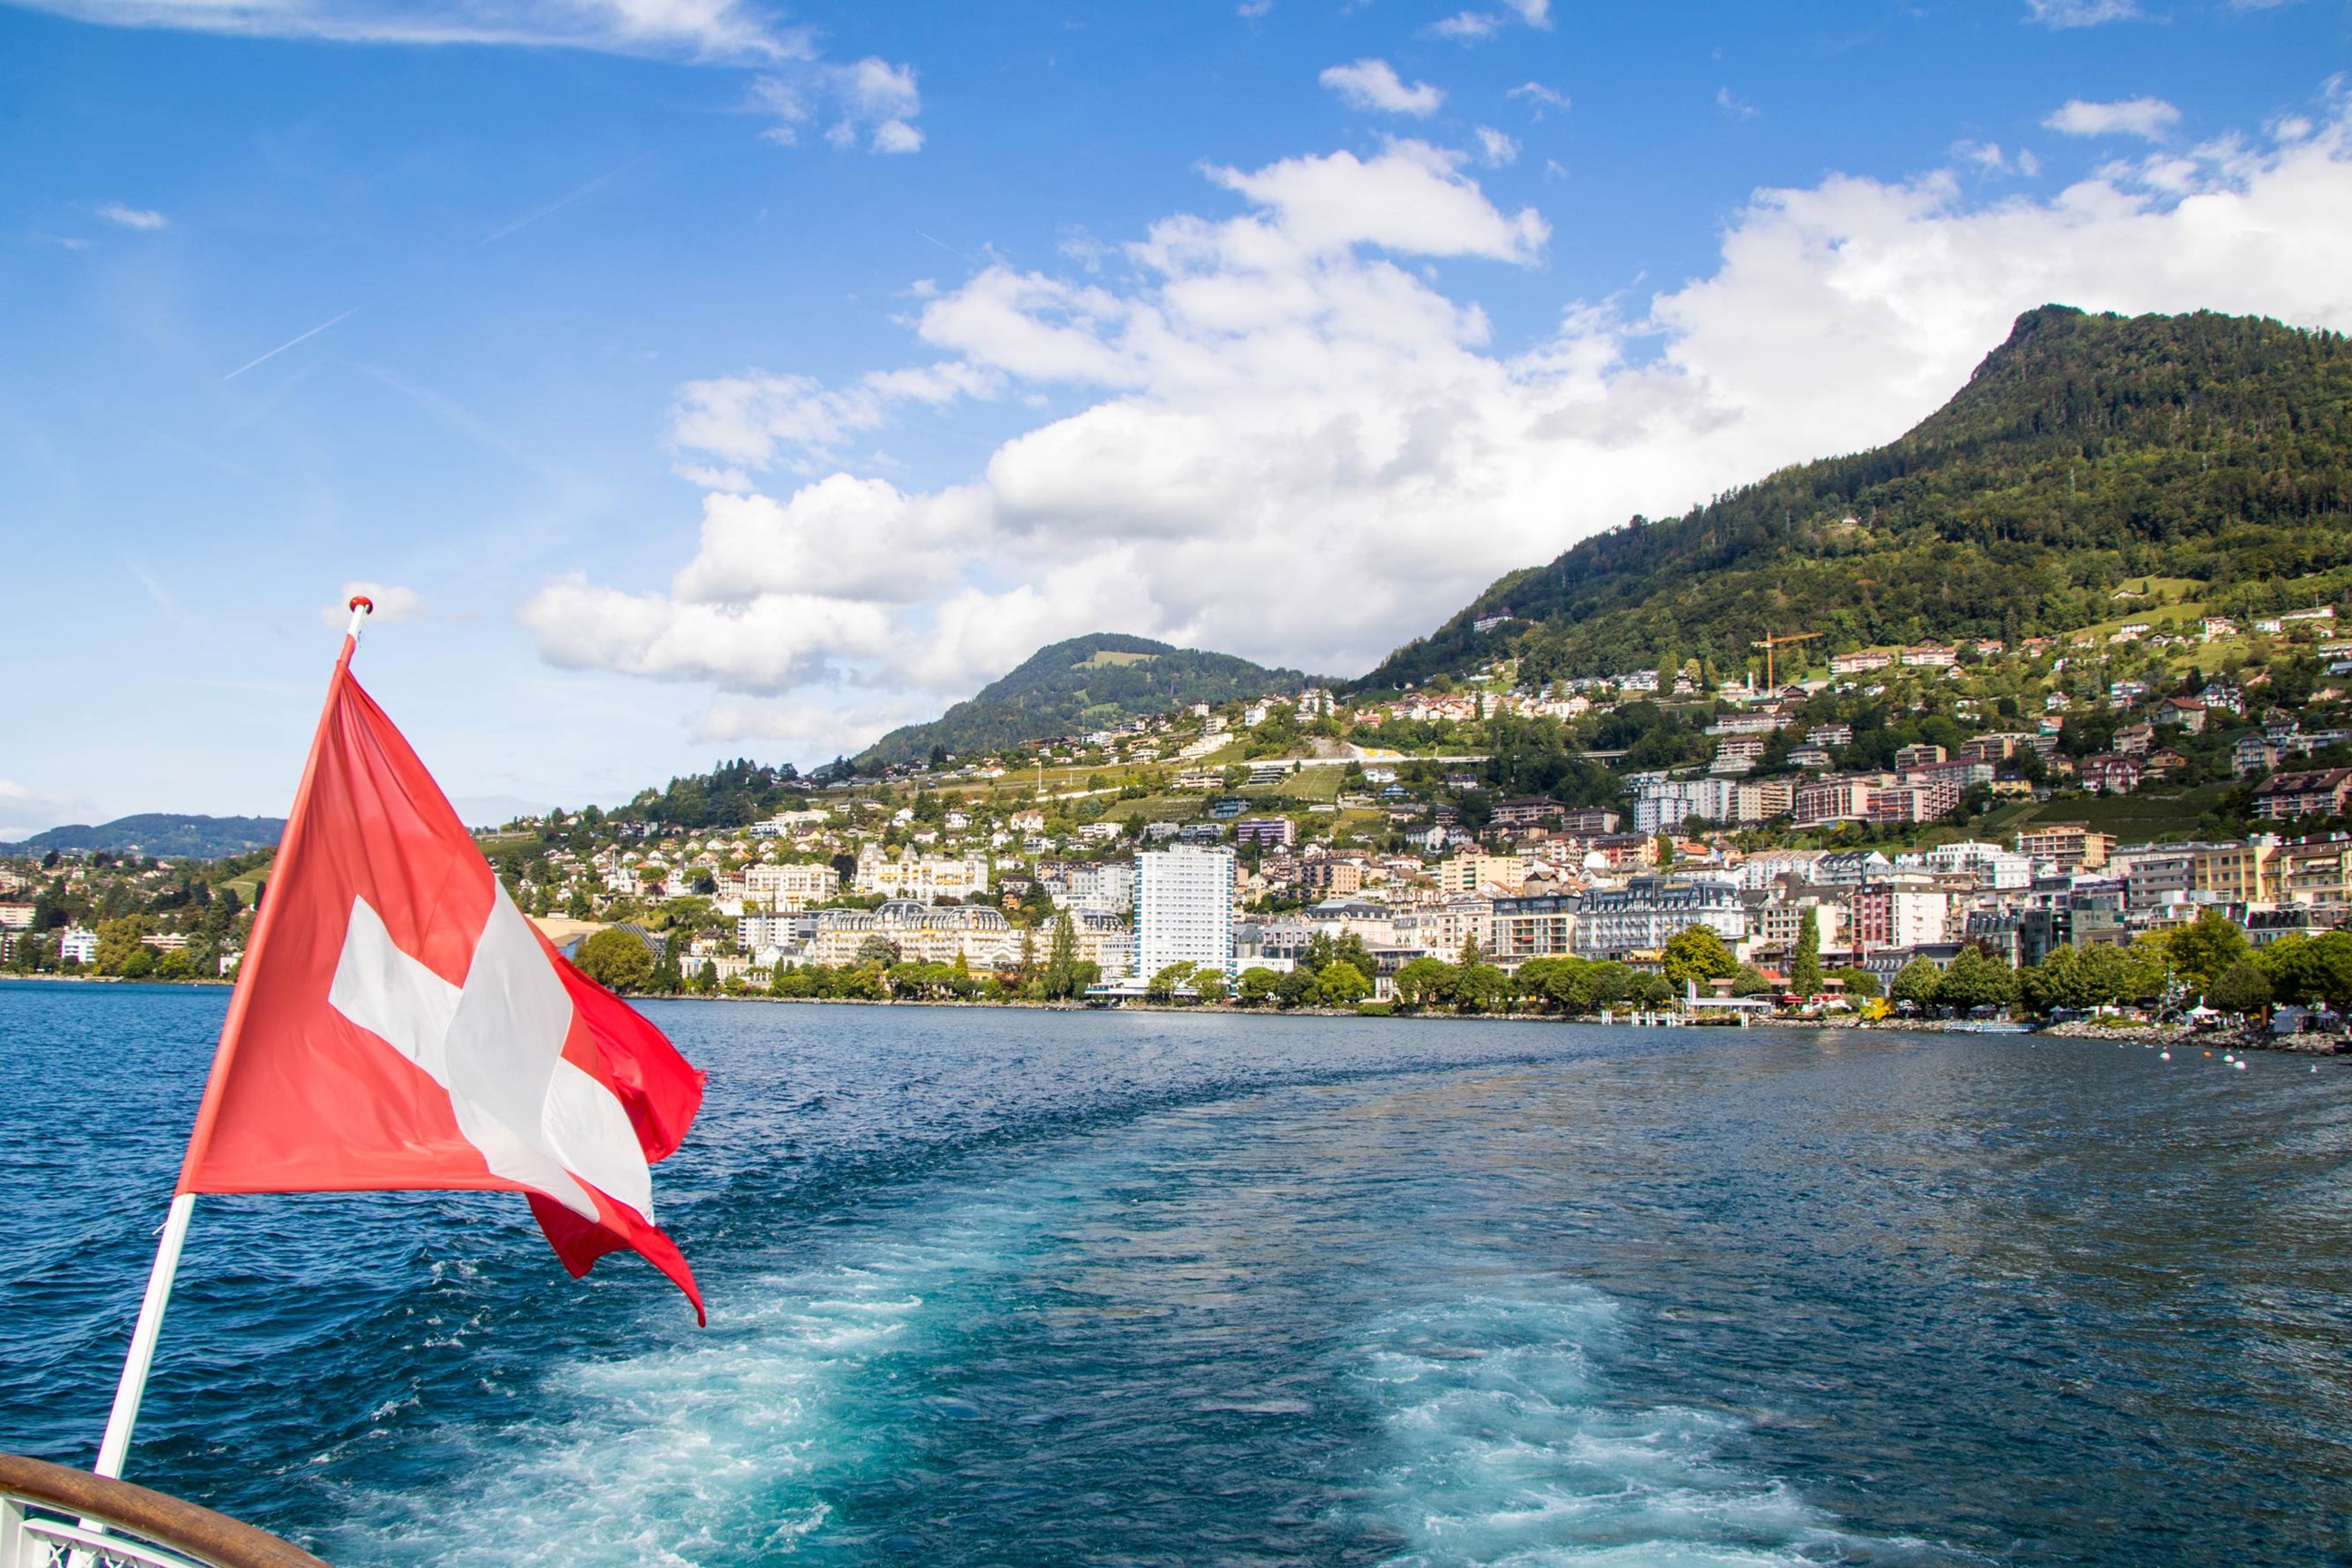 Lake Geneva Cruise in Switzerland